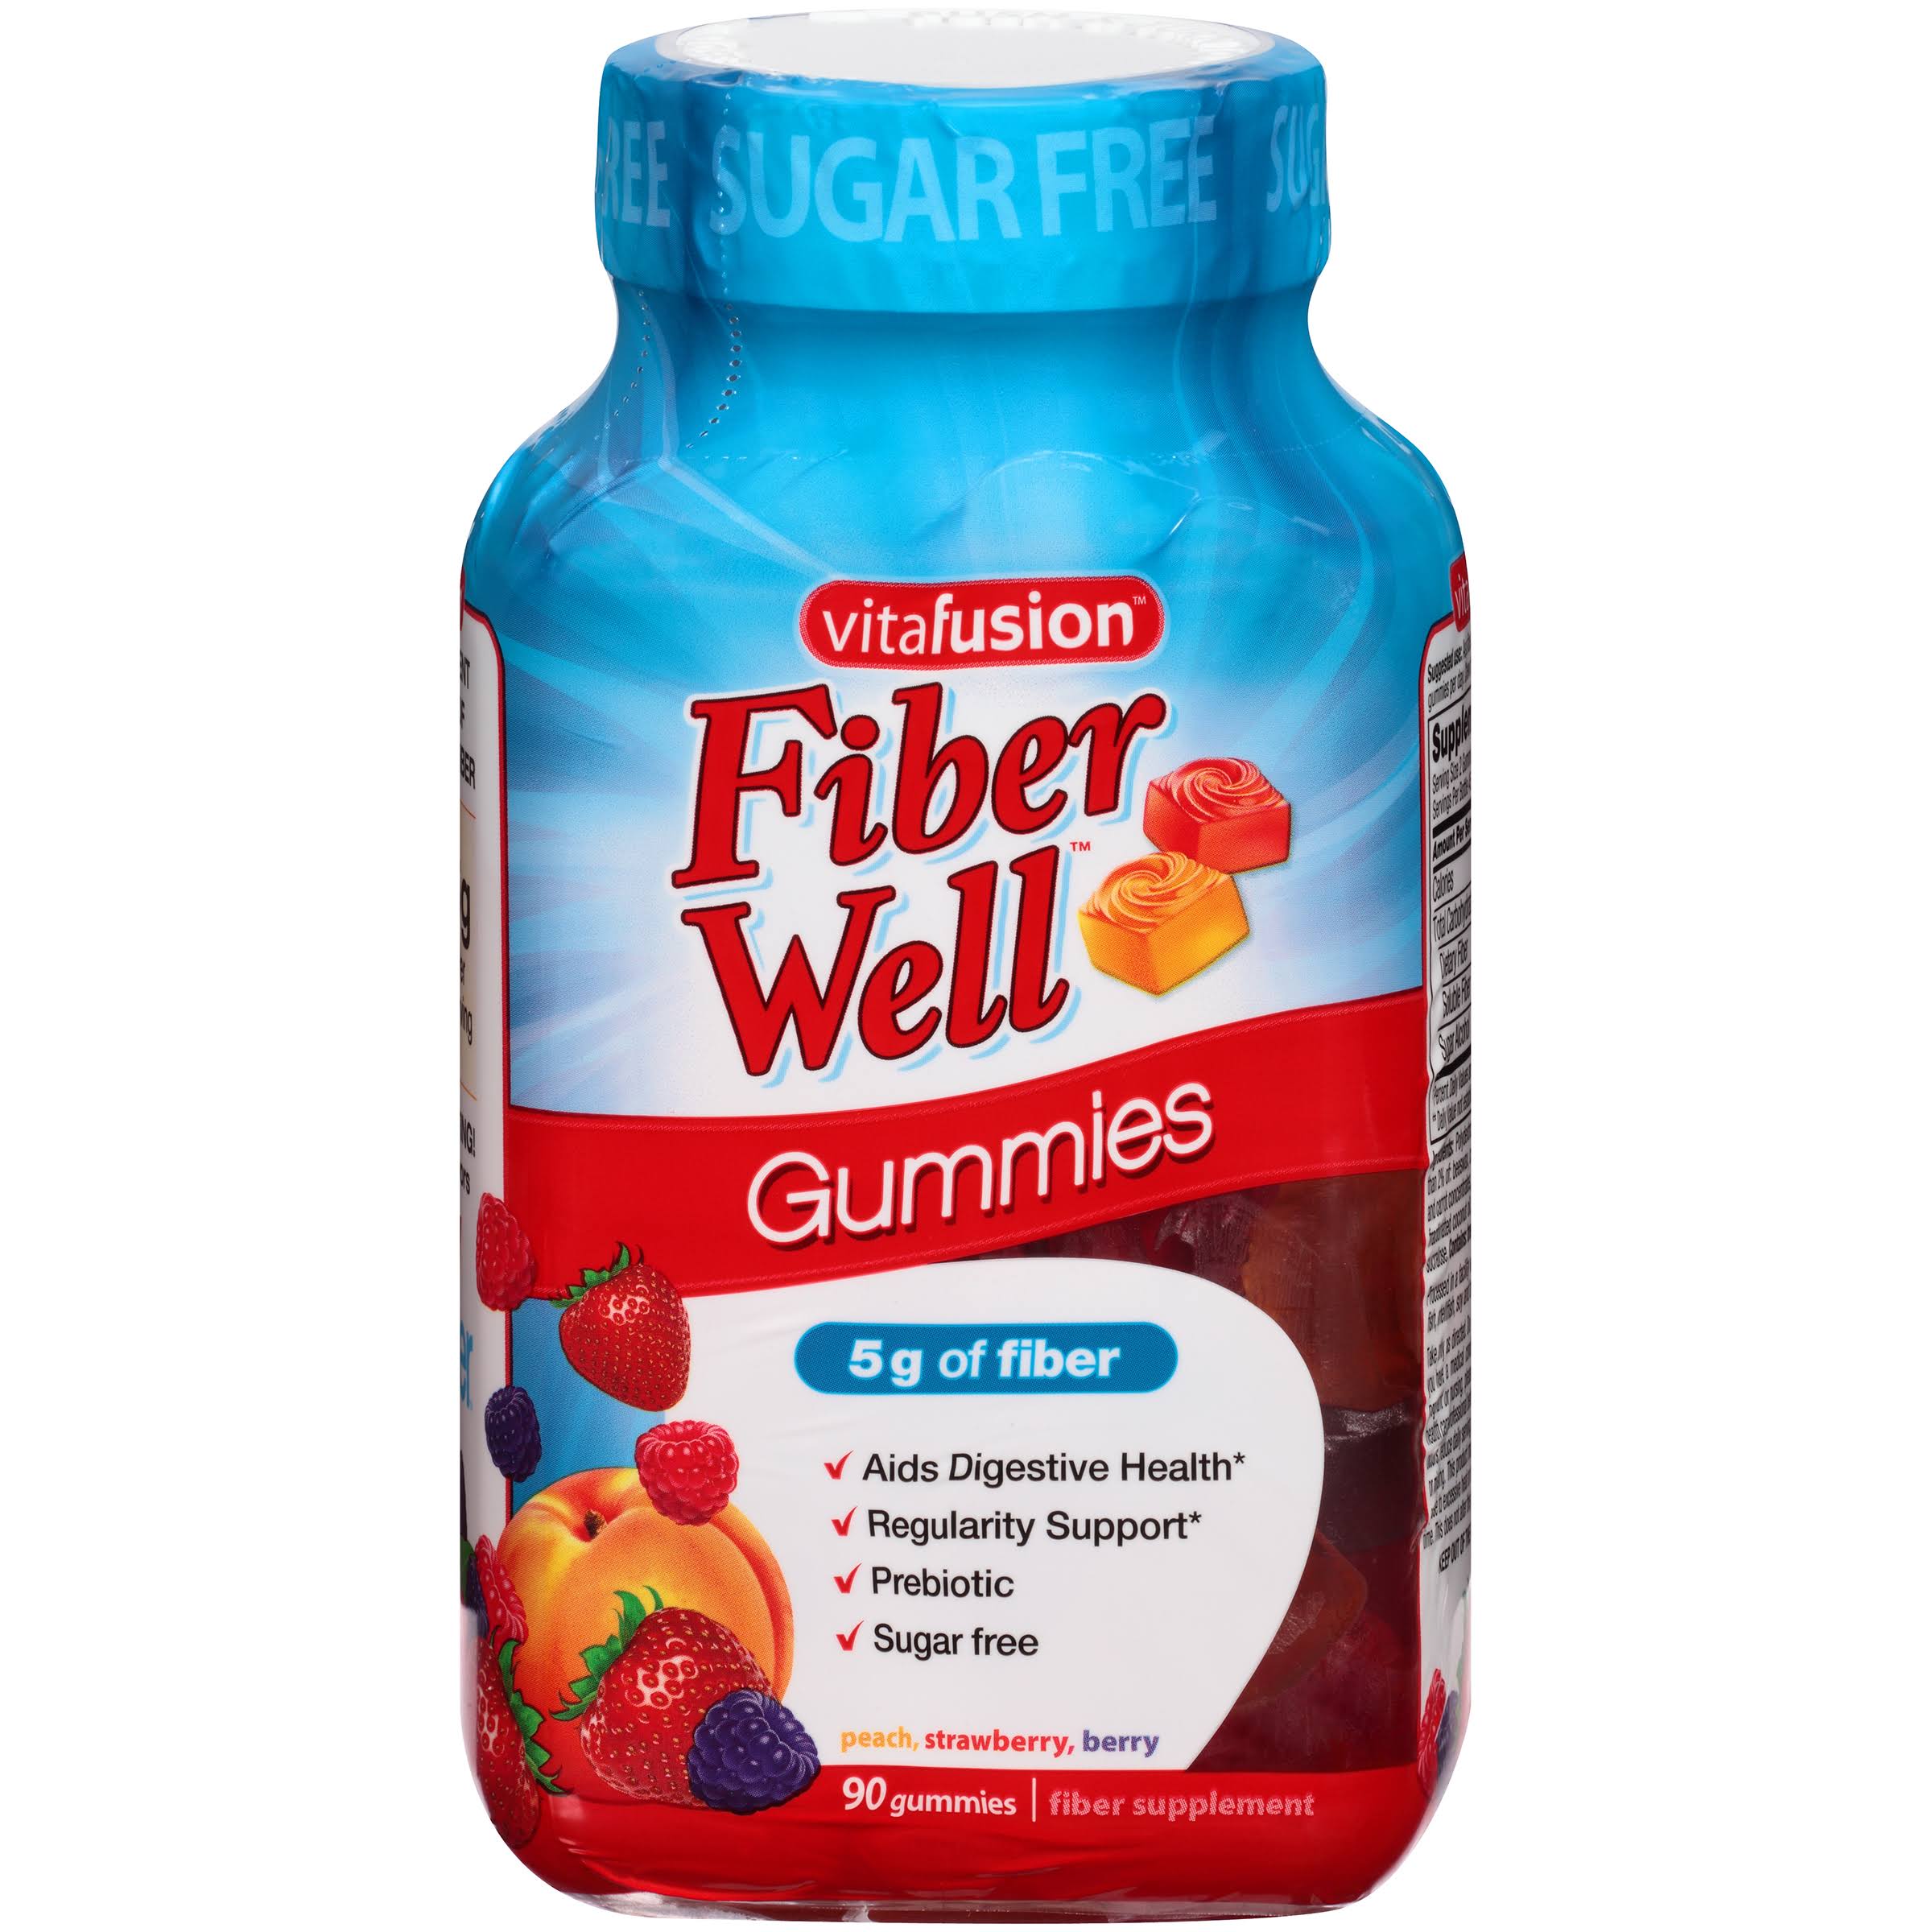 Vitafusion Fiber Well Gummies Prebiotic Fiber Supplement - 90 Count